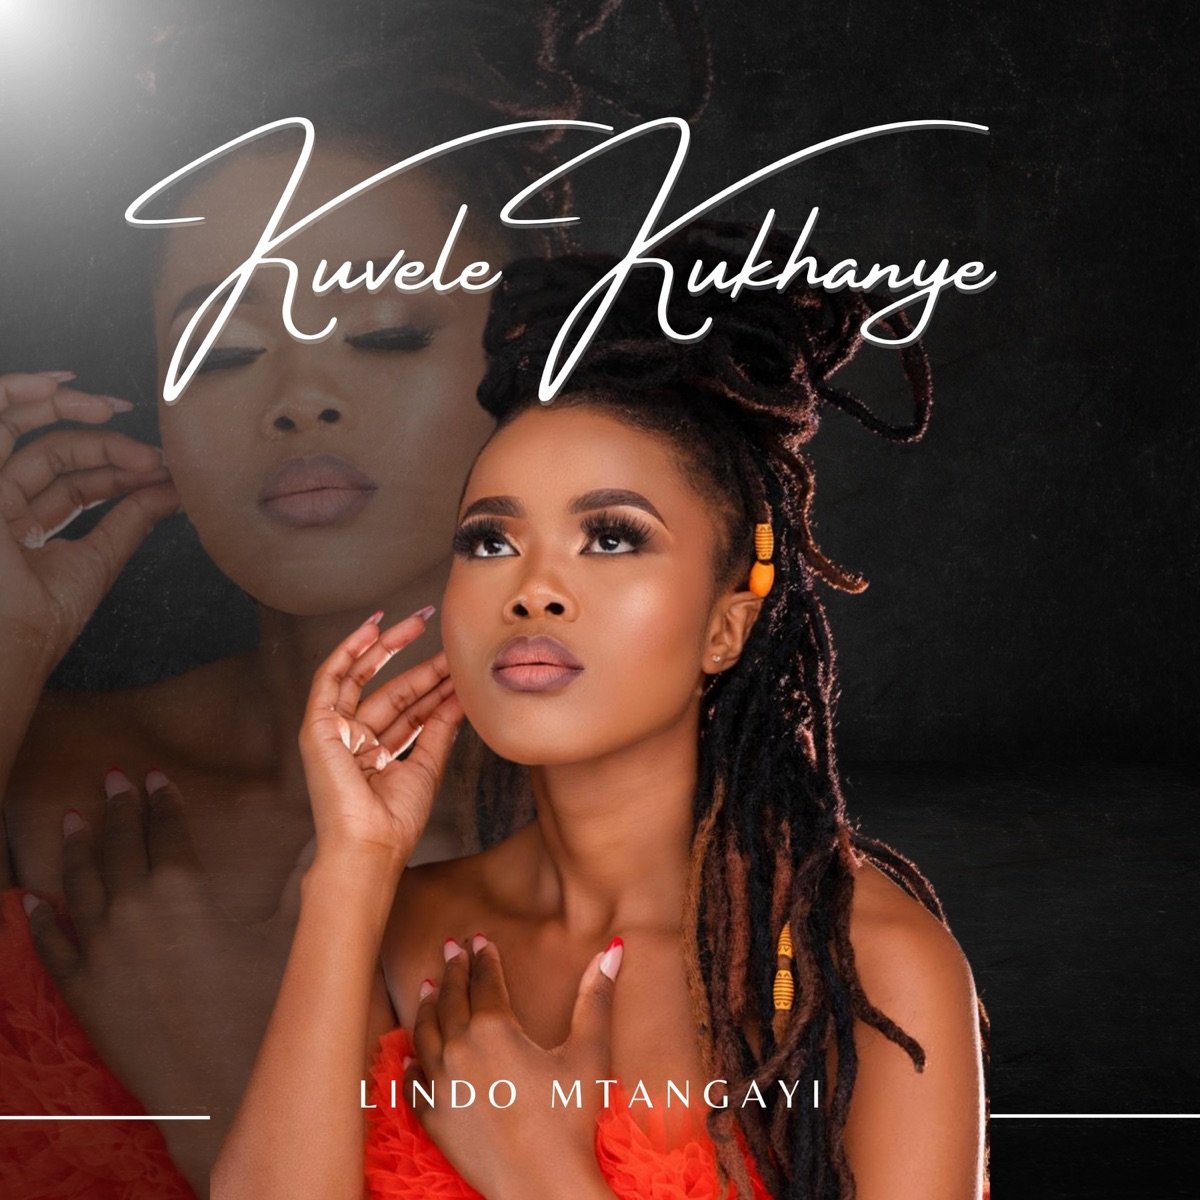 Kuvele Kukhanye - Lindo Mtangayi@Bolomp3.com